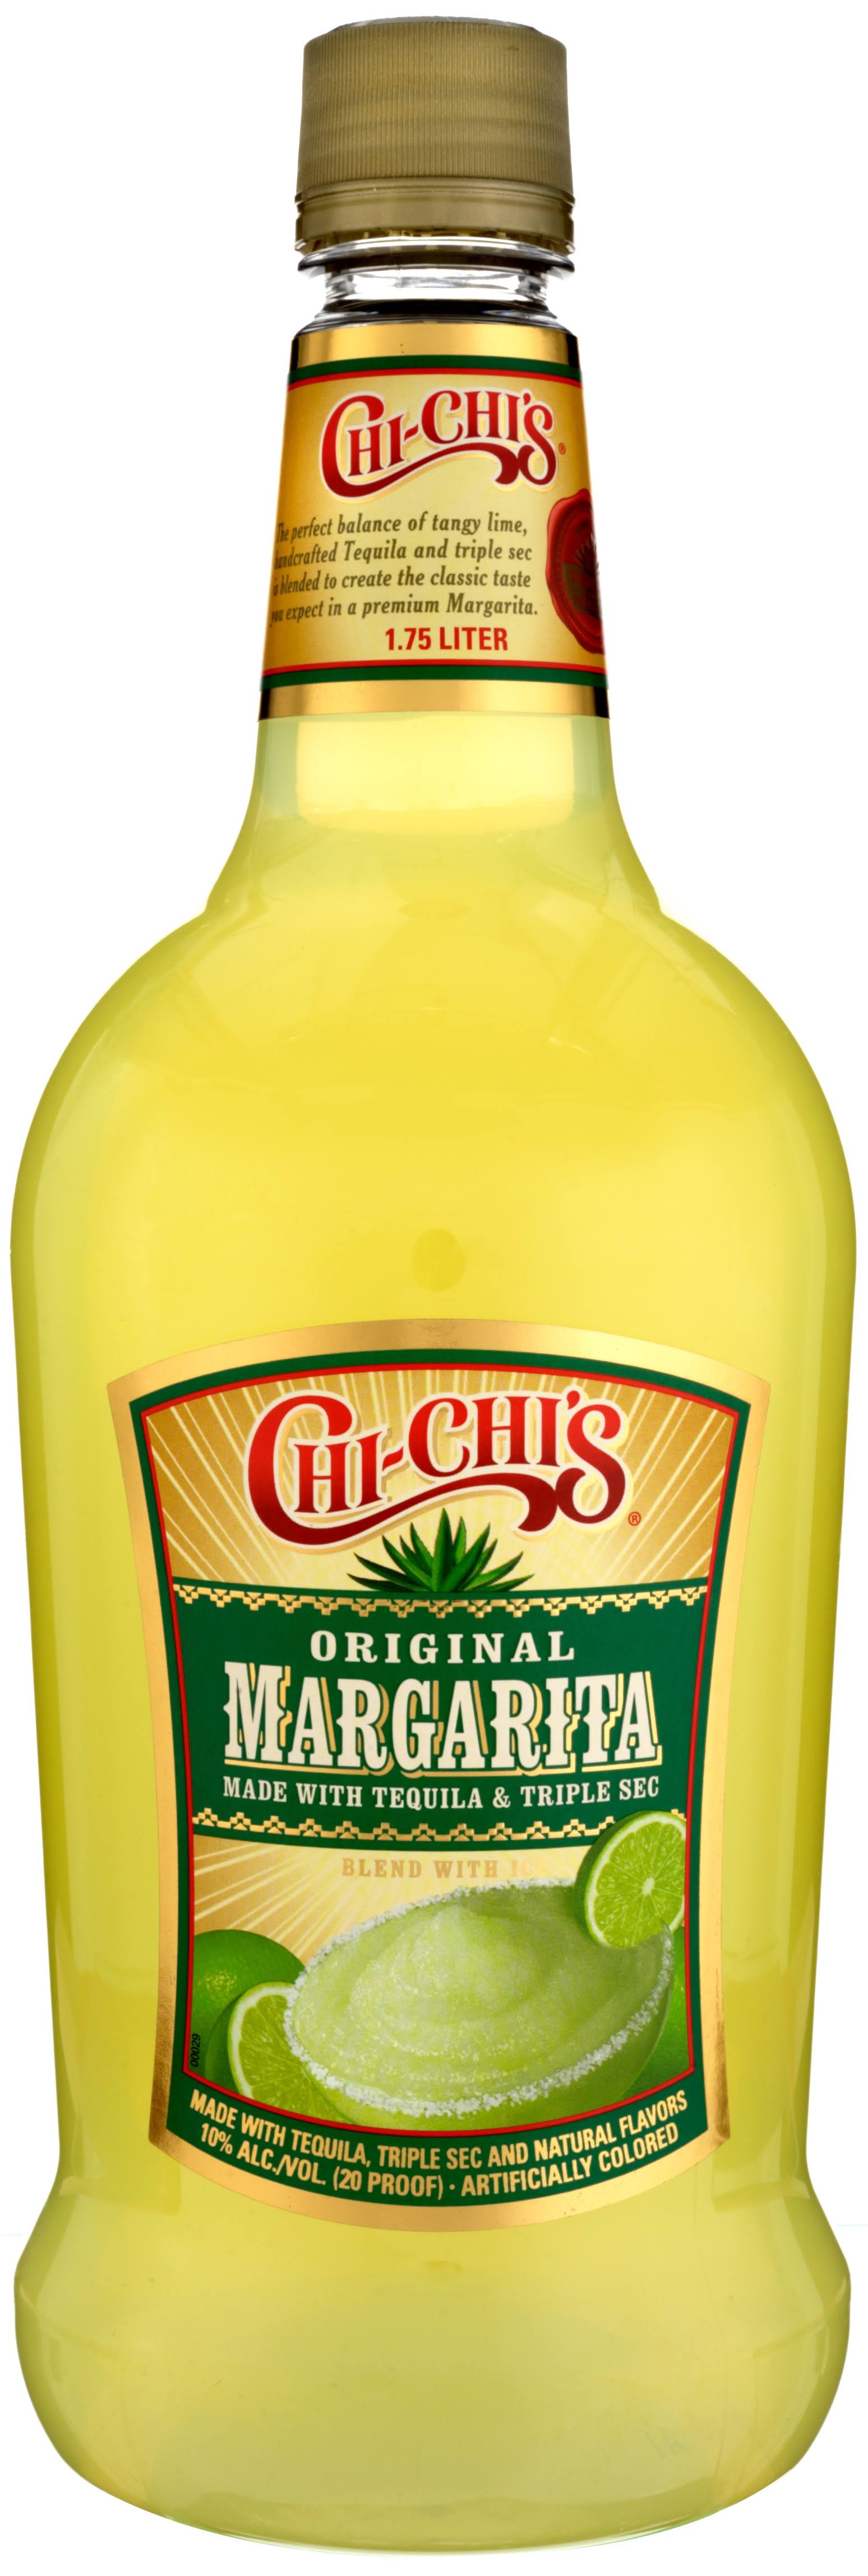 Chi-chi's Original Margarita